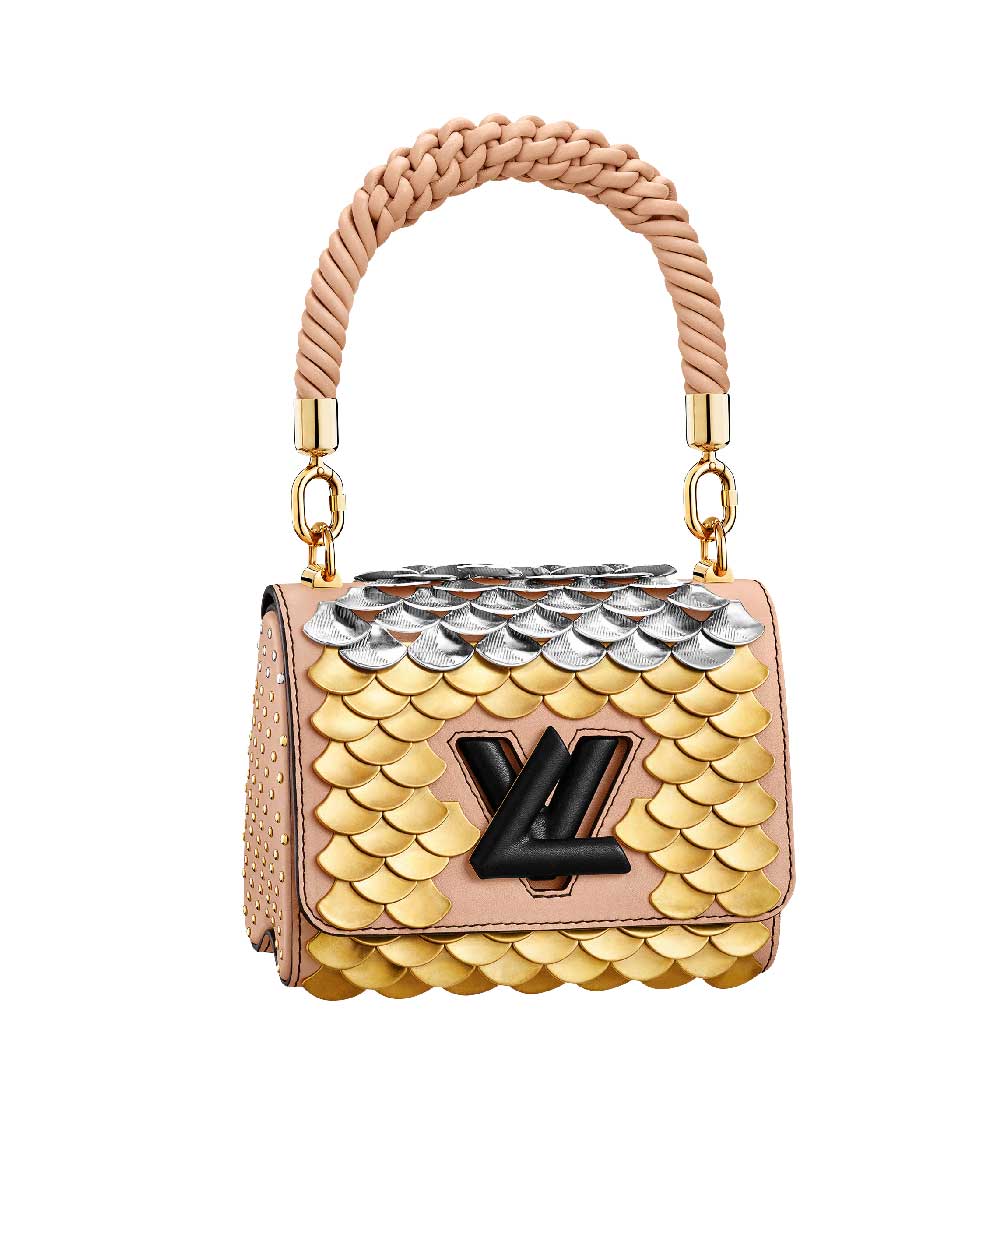 Louis Vuitton bag, $8650